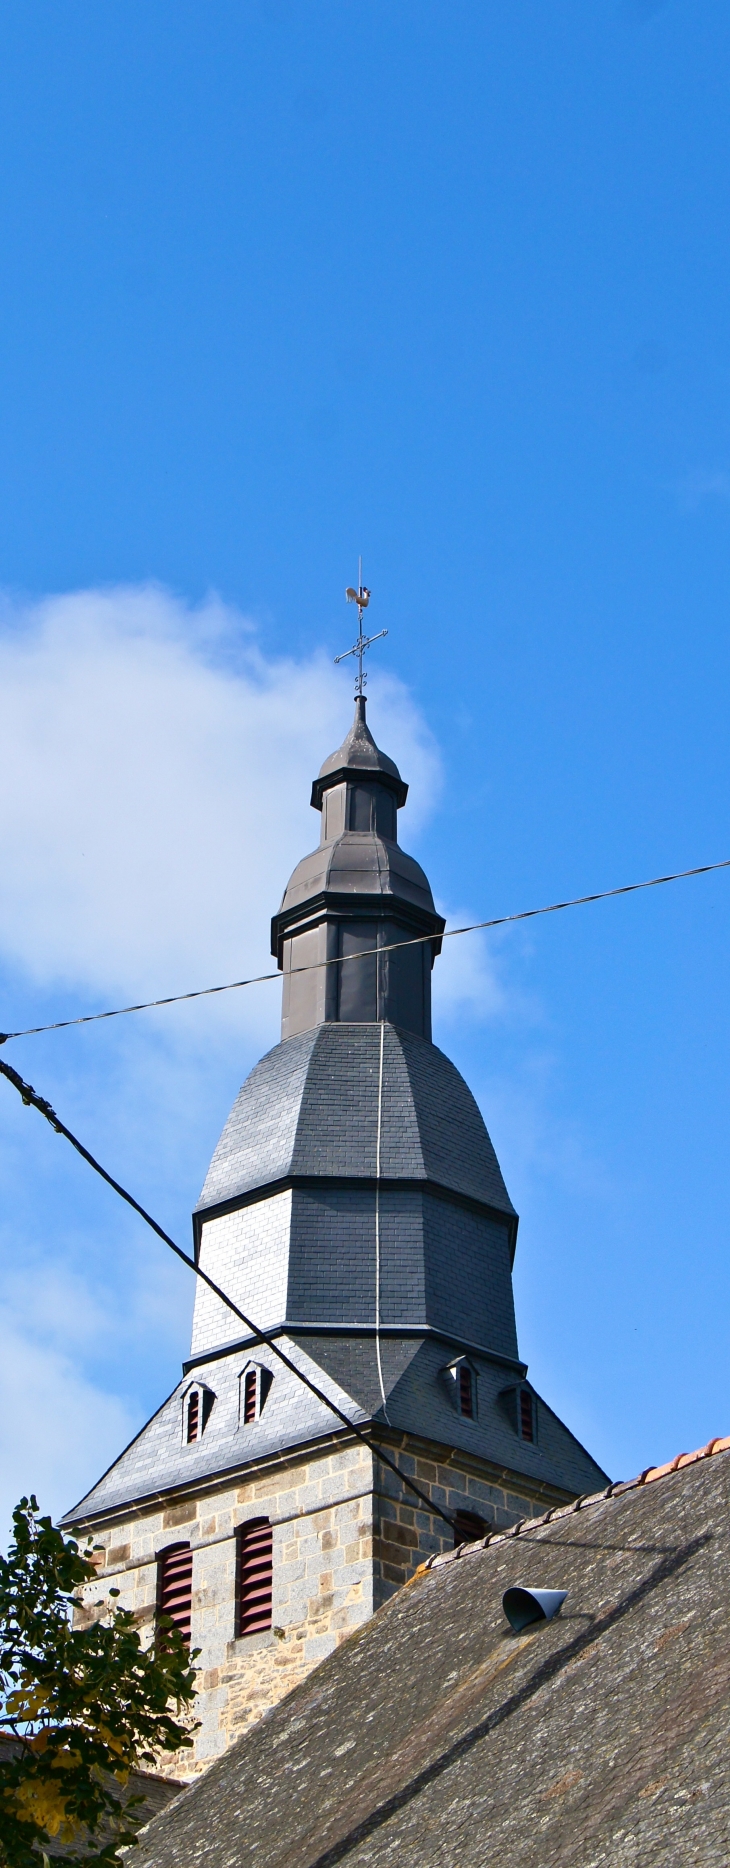 Le clocher de l'église Saint-Pierre. - Oisseau